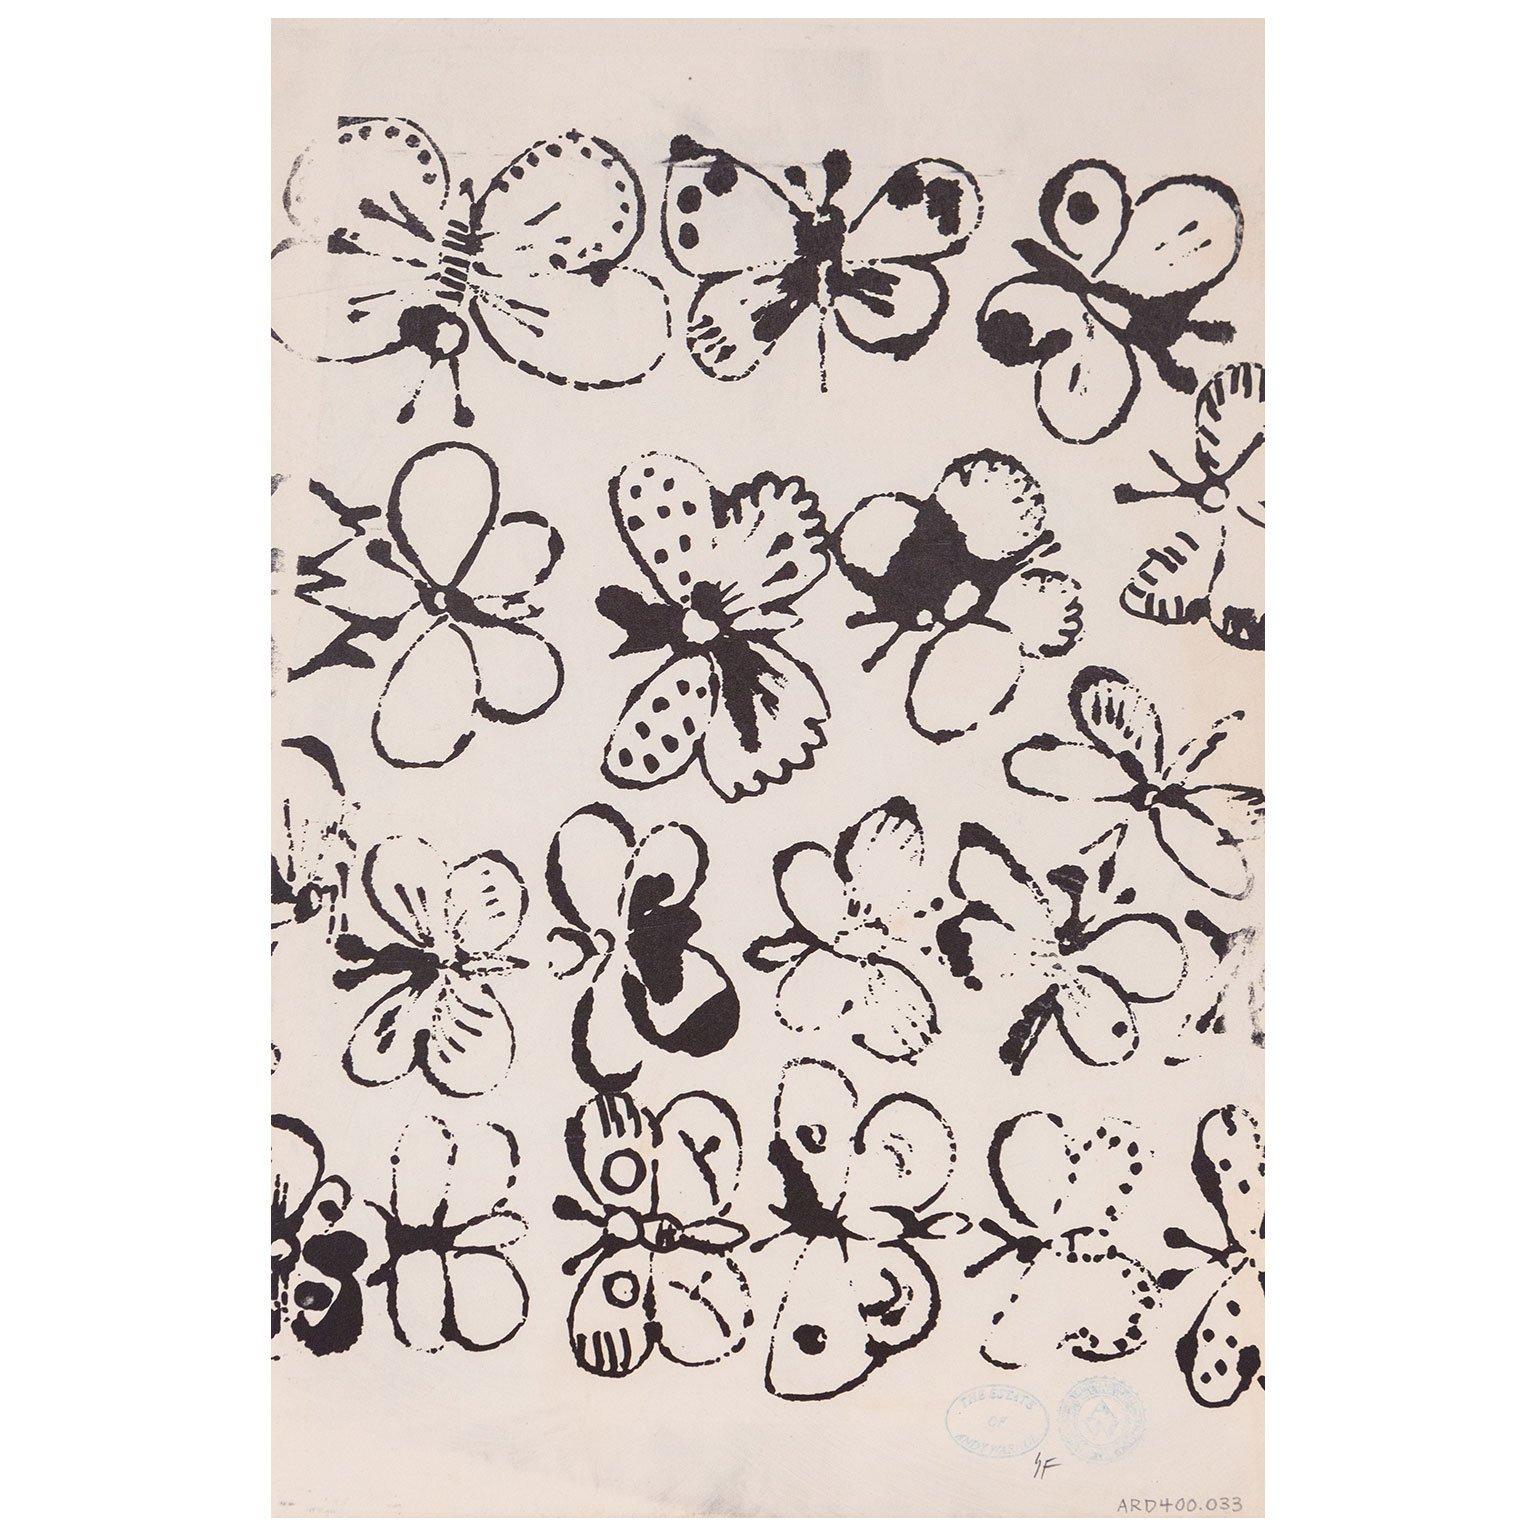 Zeichnung eines Jungen / Schmetterlinge (Pop-Art), Art, von Andy Warhol